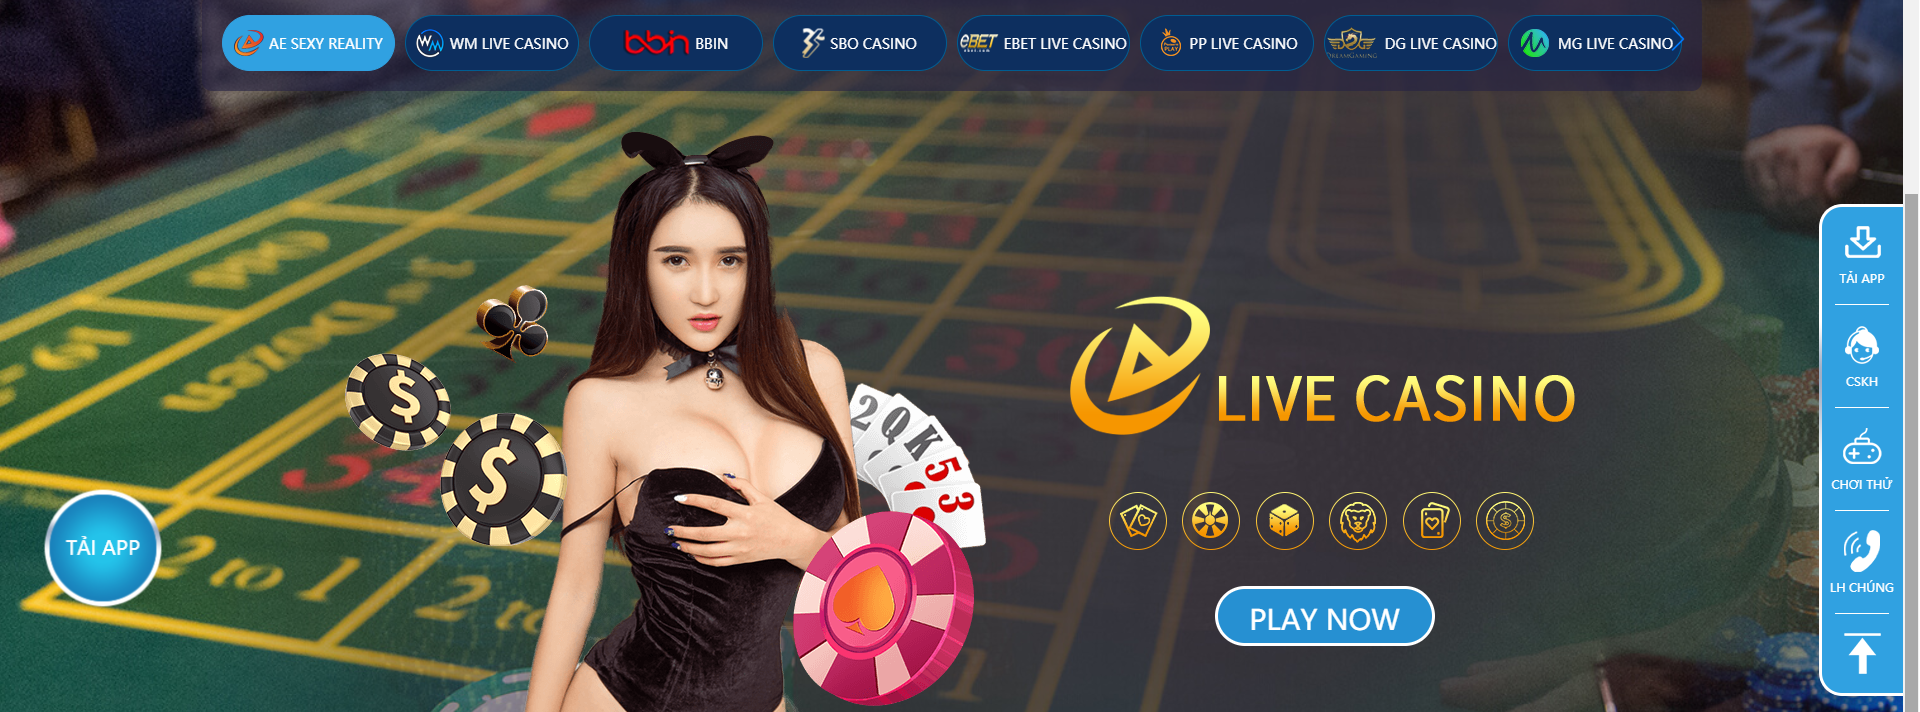 Sòng bạc casino online 123B